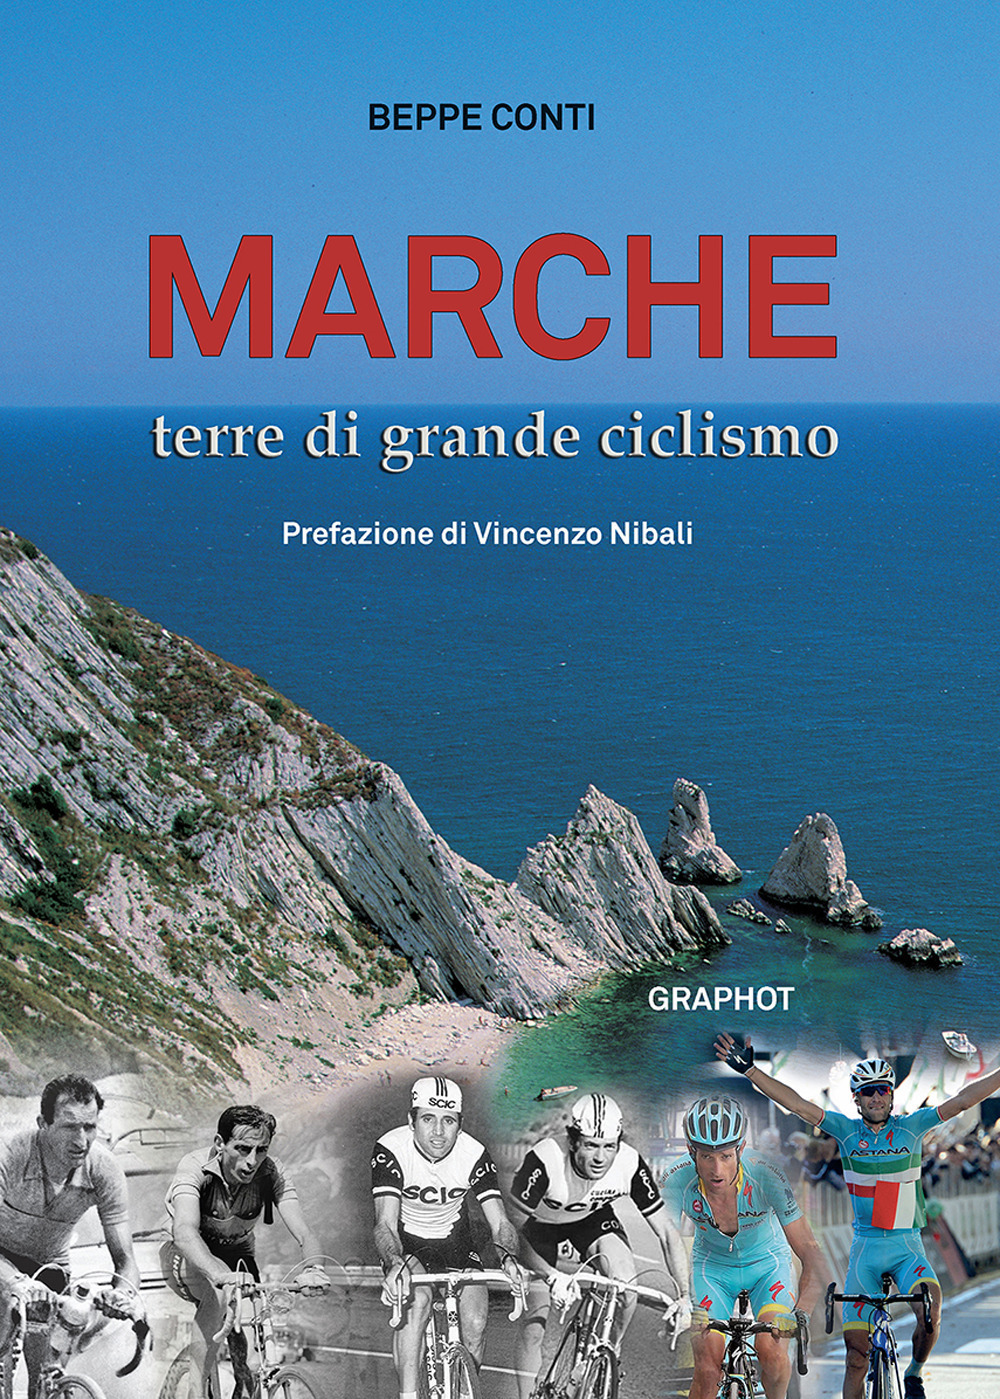 Libri Beppe Conti - Marche Terre Di Grande Ciclismo NUOVO SIGILLATO, EDIZIONE DEL 23/02/2021 SUBITO DISPONIBILE